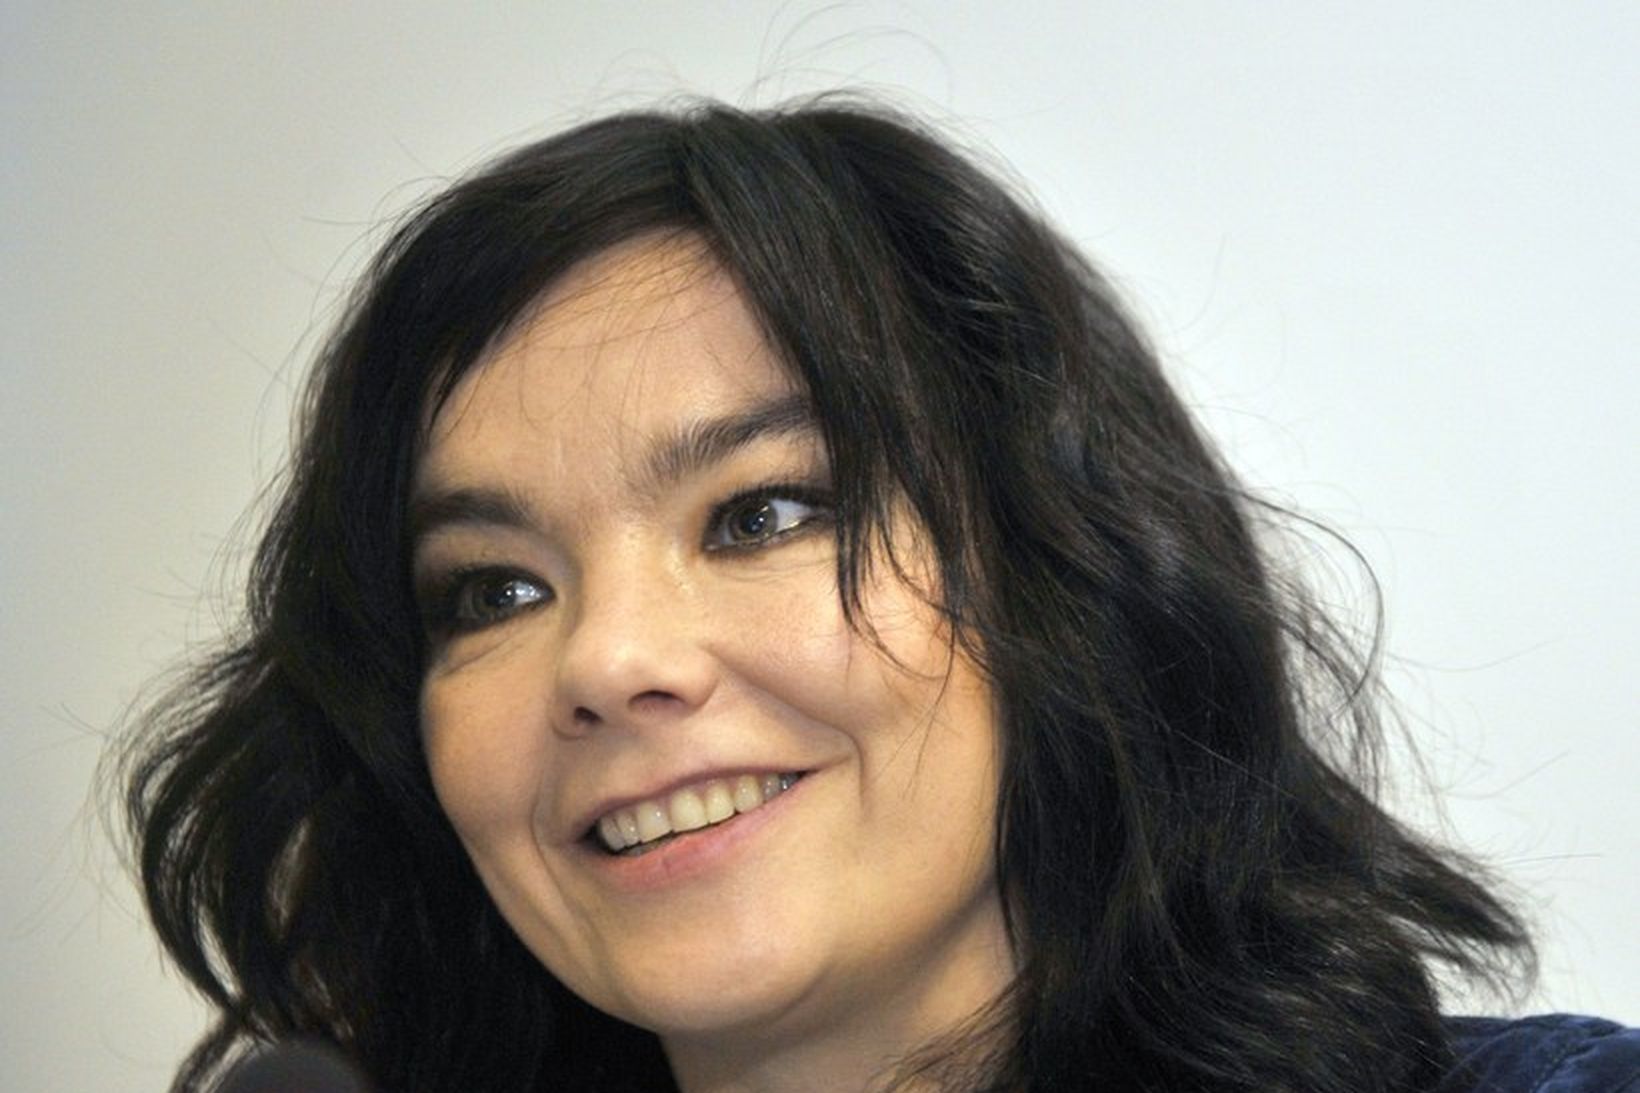 Björk Guðmundsdóttir talar enga tæpitungu í samtalinu við Guardian.